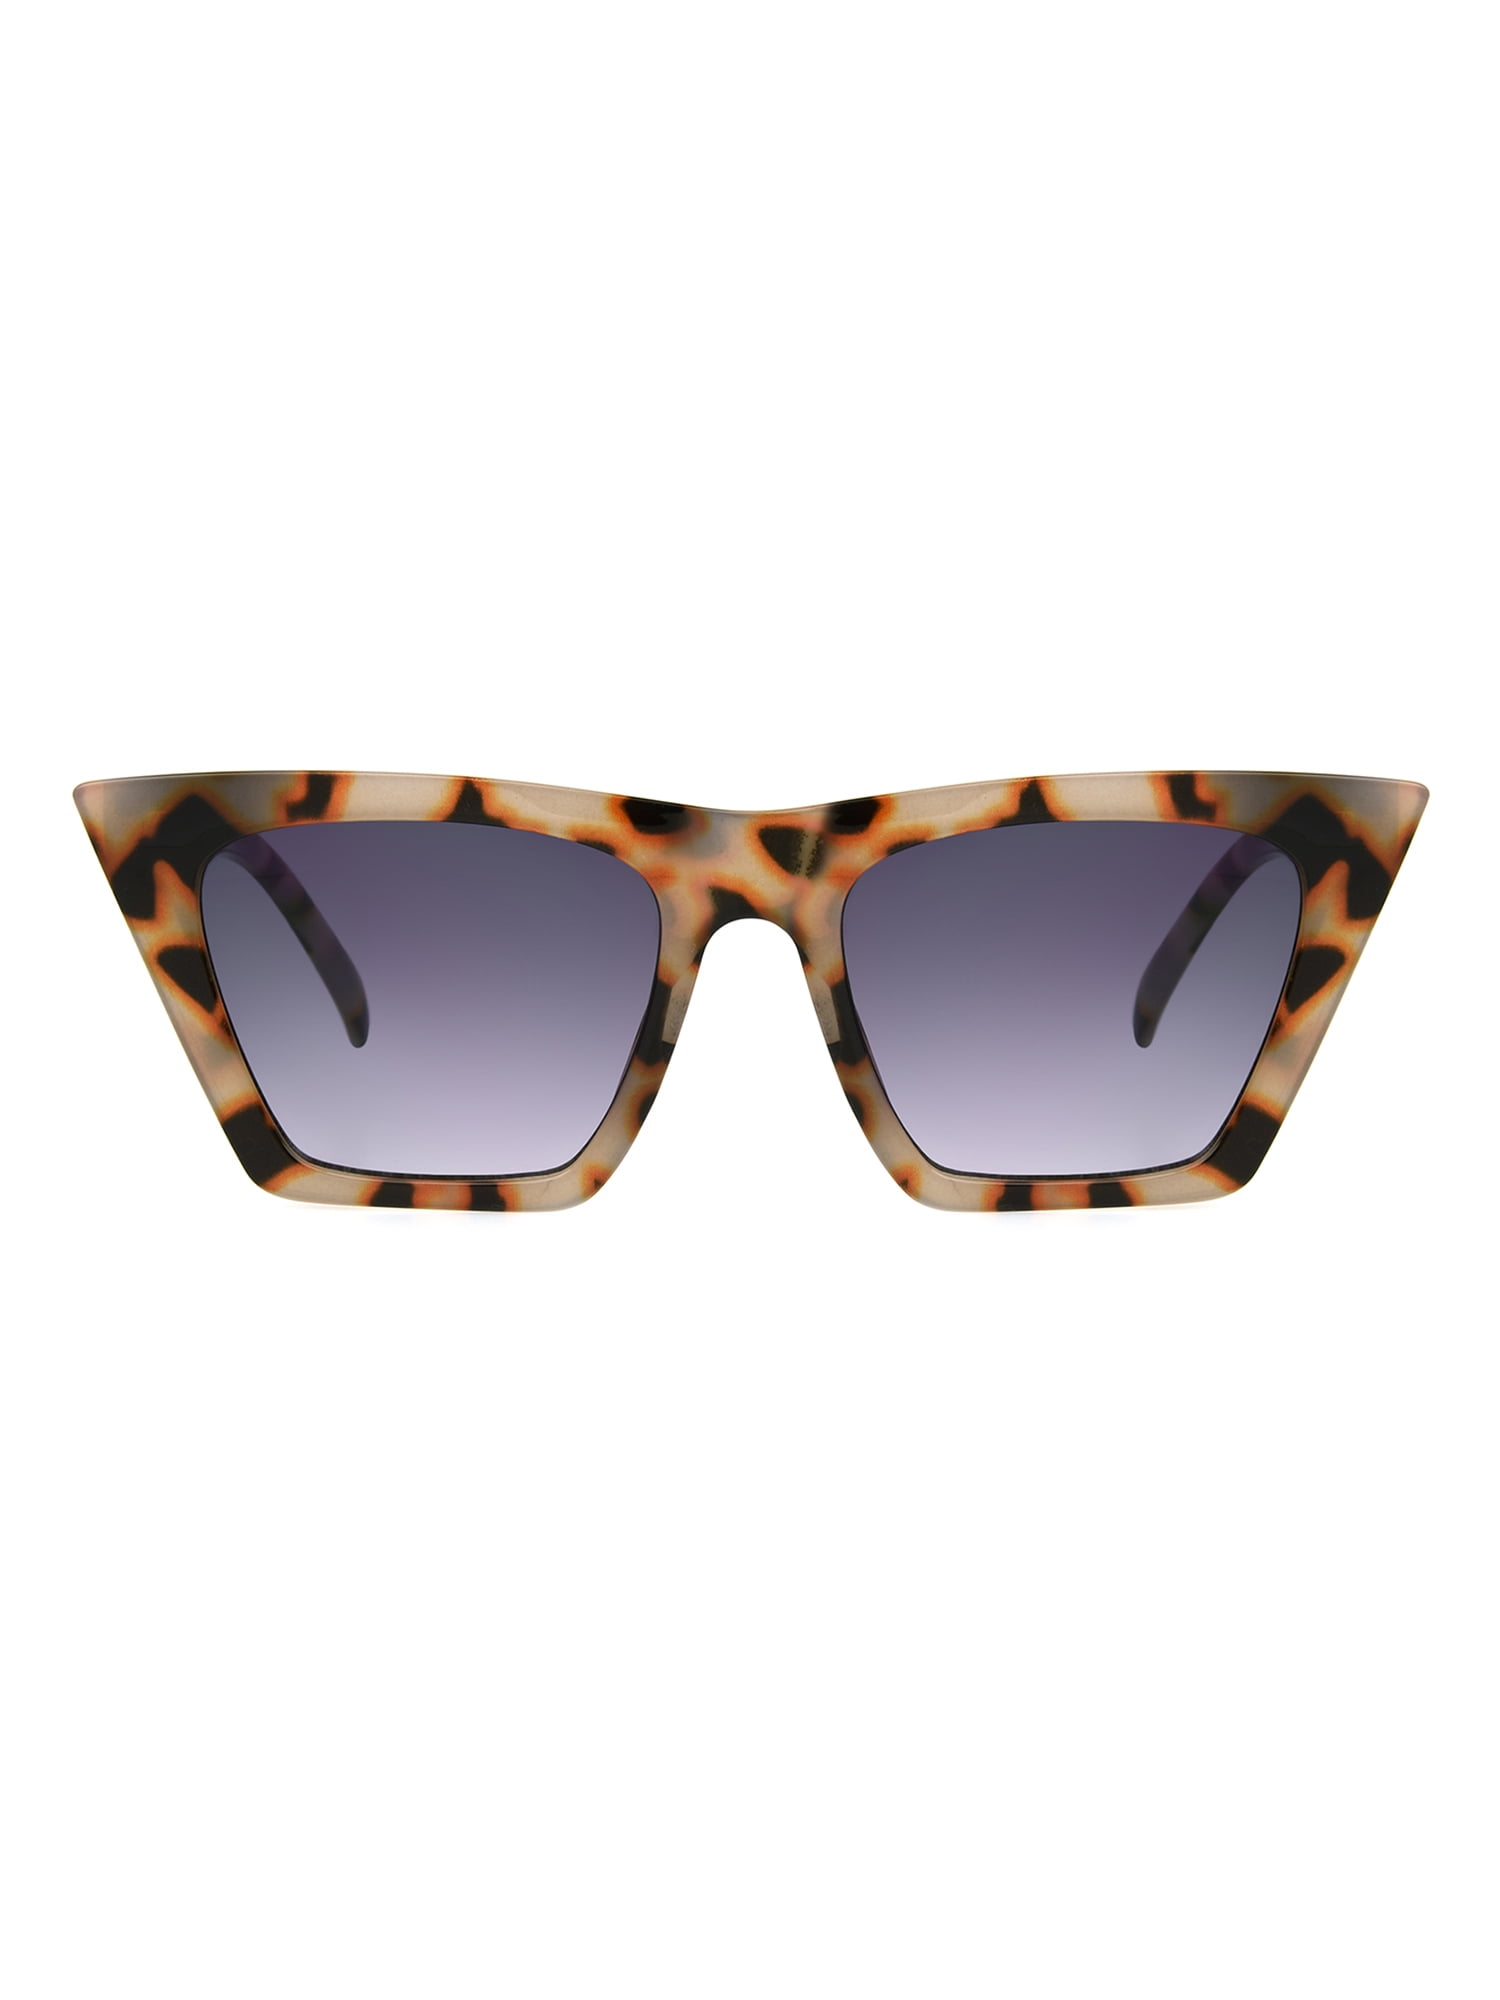 Foster Grant Women's POLARIZED Sunglasses Cat Eye Tortoise Shell 100% UVA/UVB 